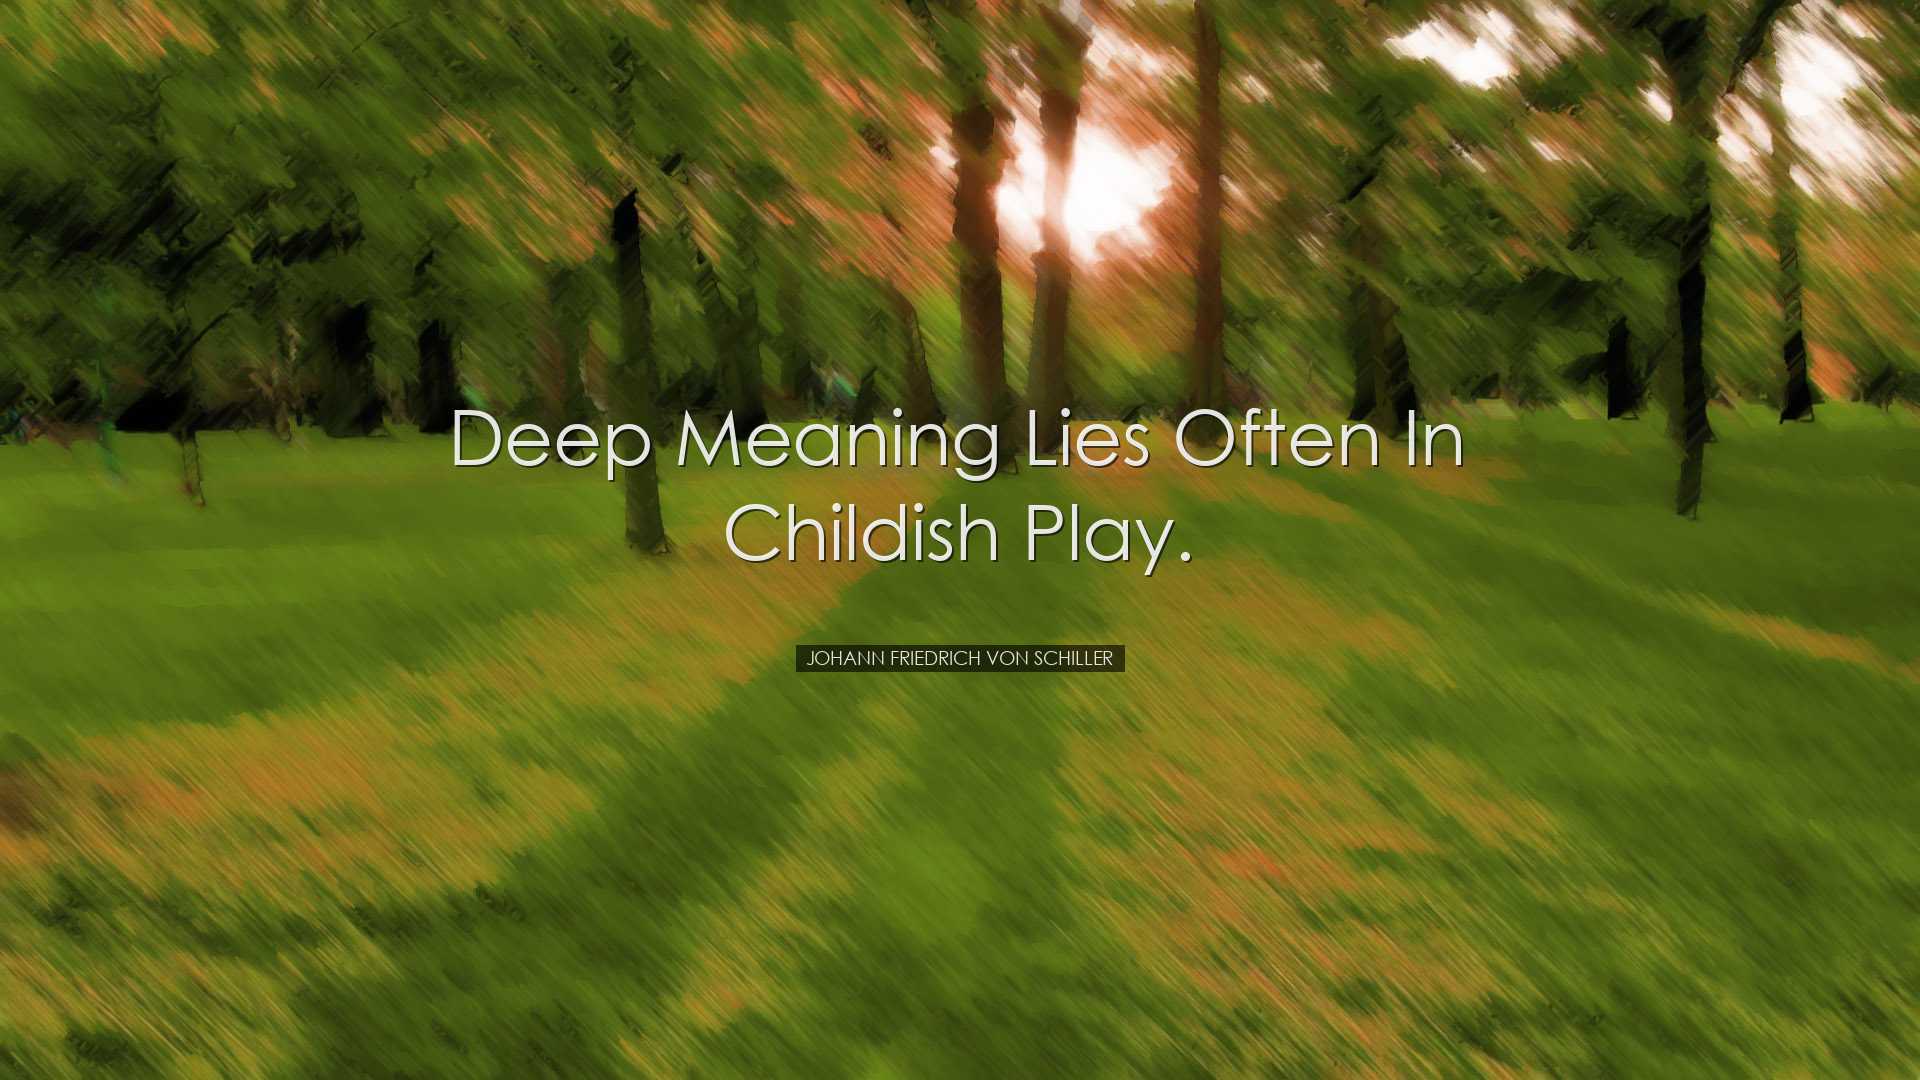 Deep meaning lies often in childish play. - Johann Friedrich von S